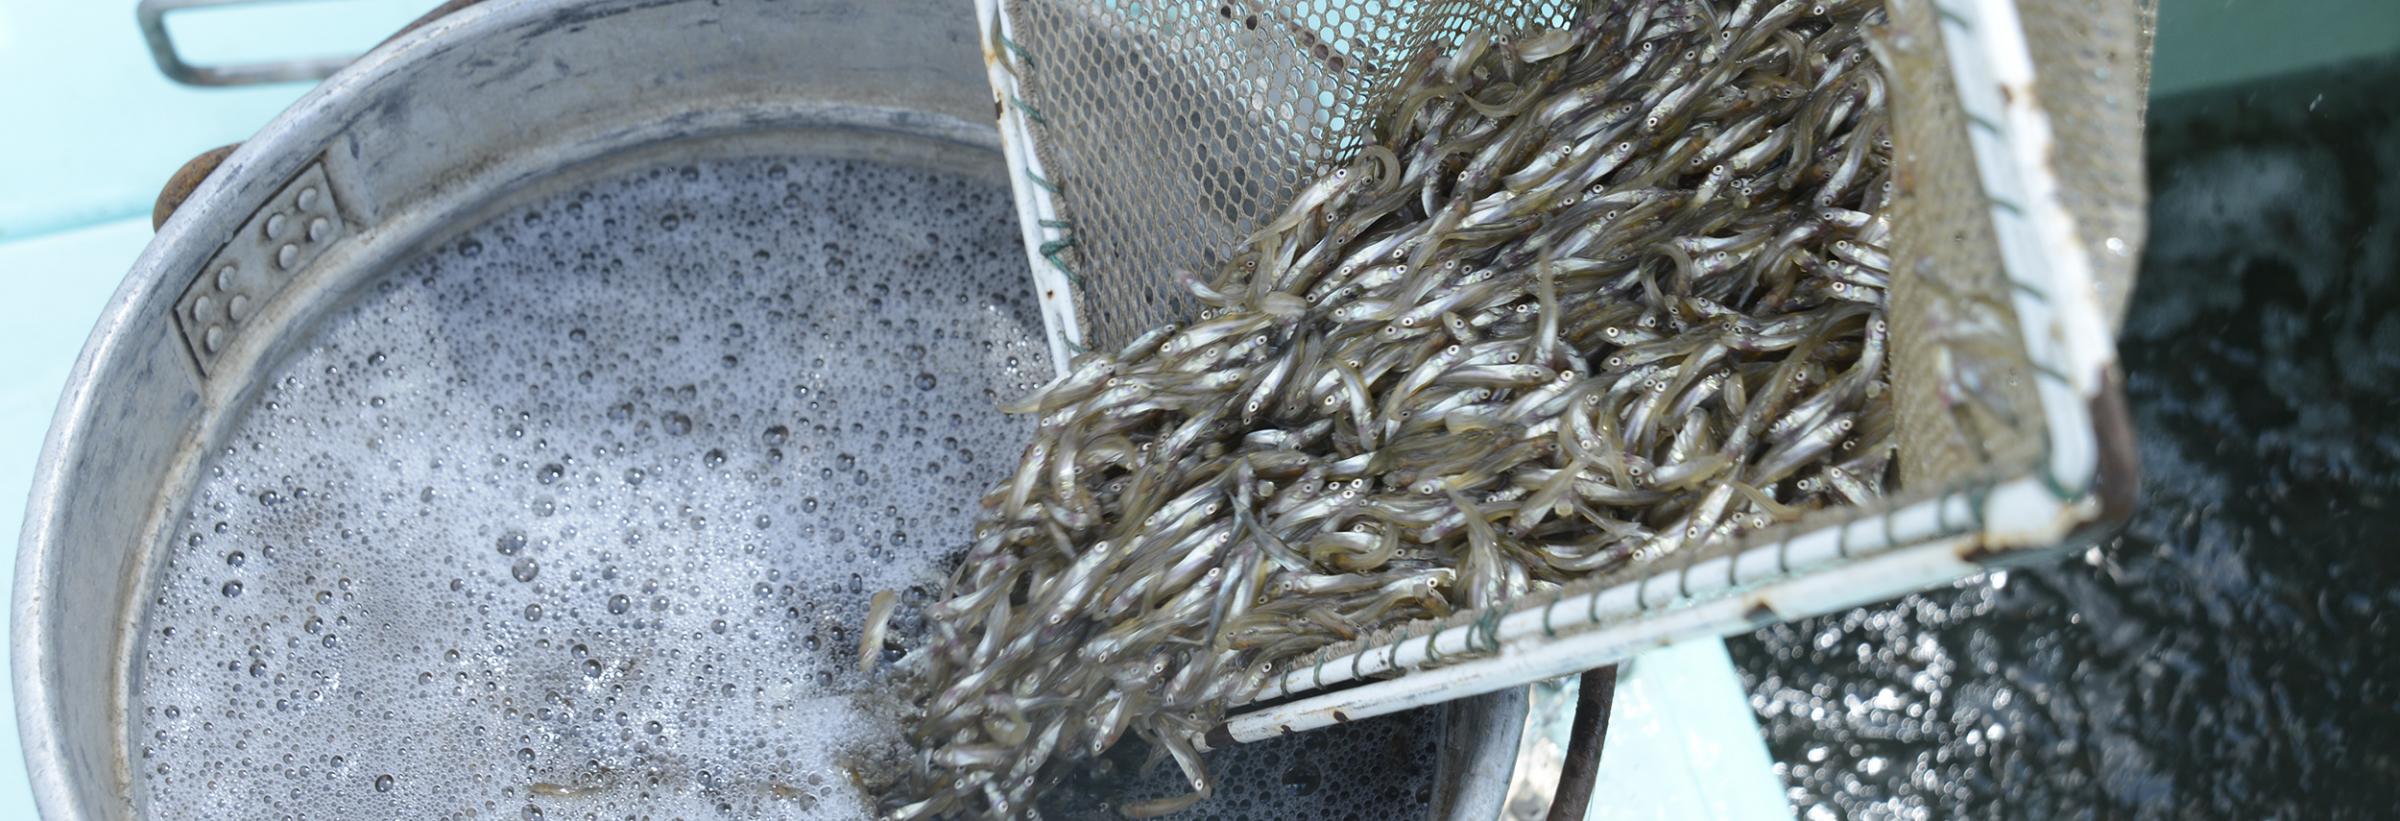 2016 North Dakota Fish Stocking Report Unique Fish Photo